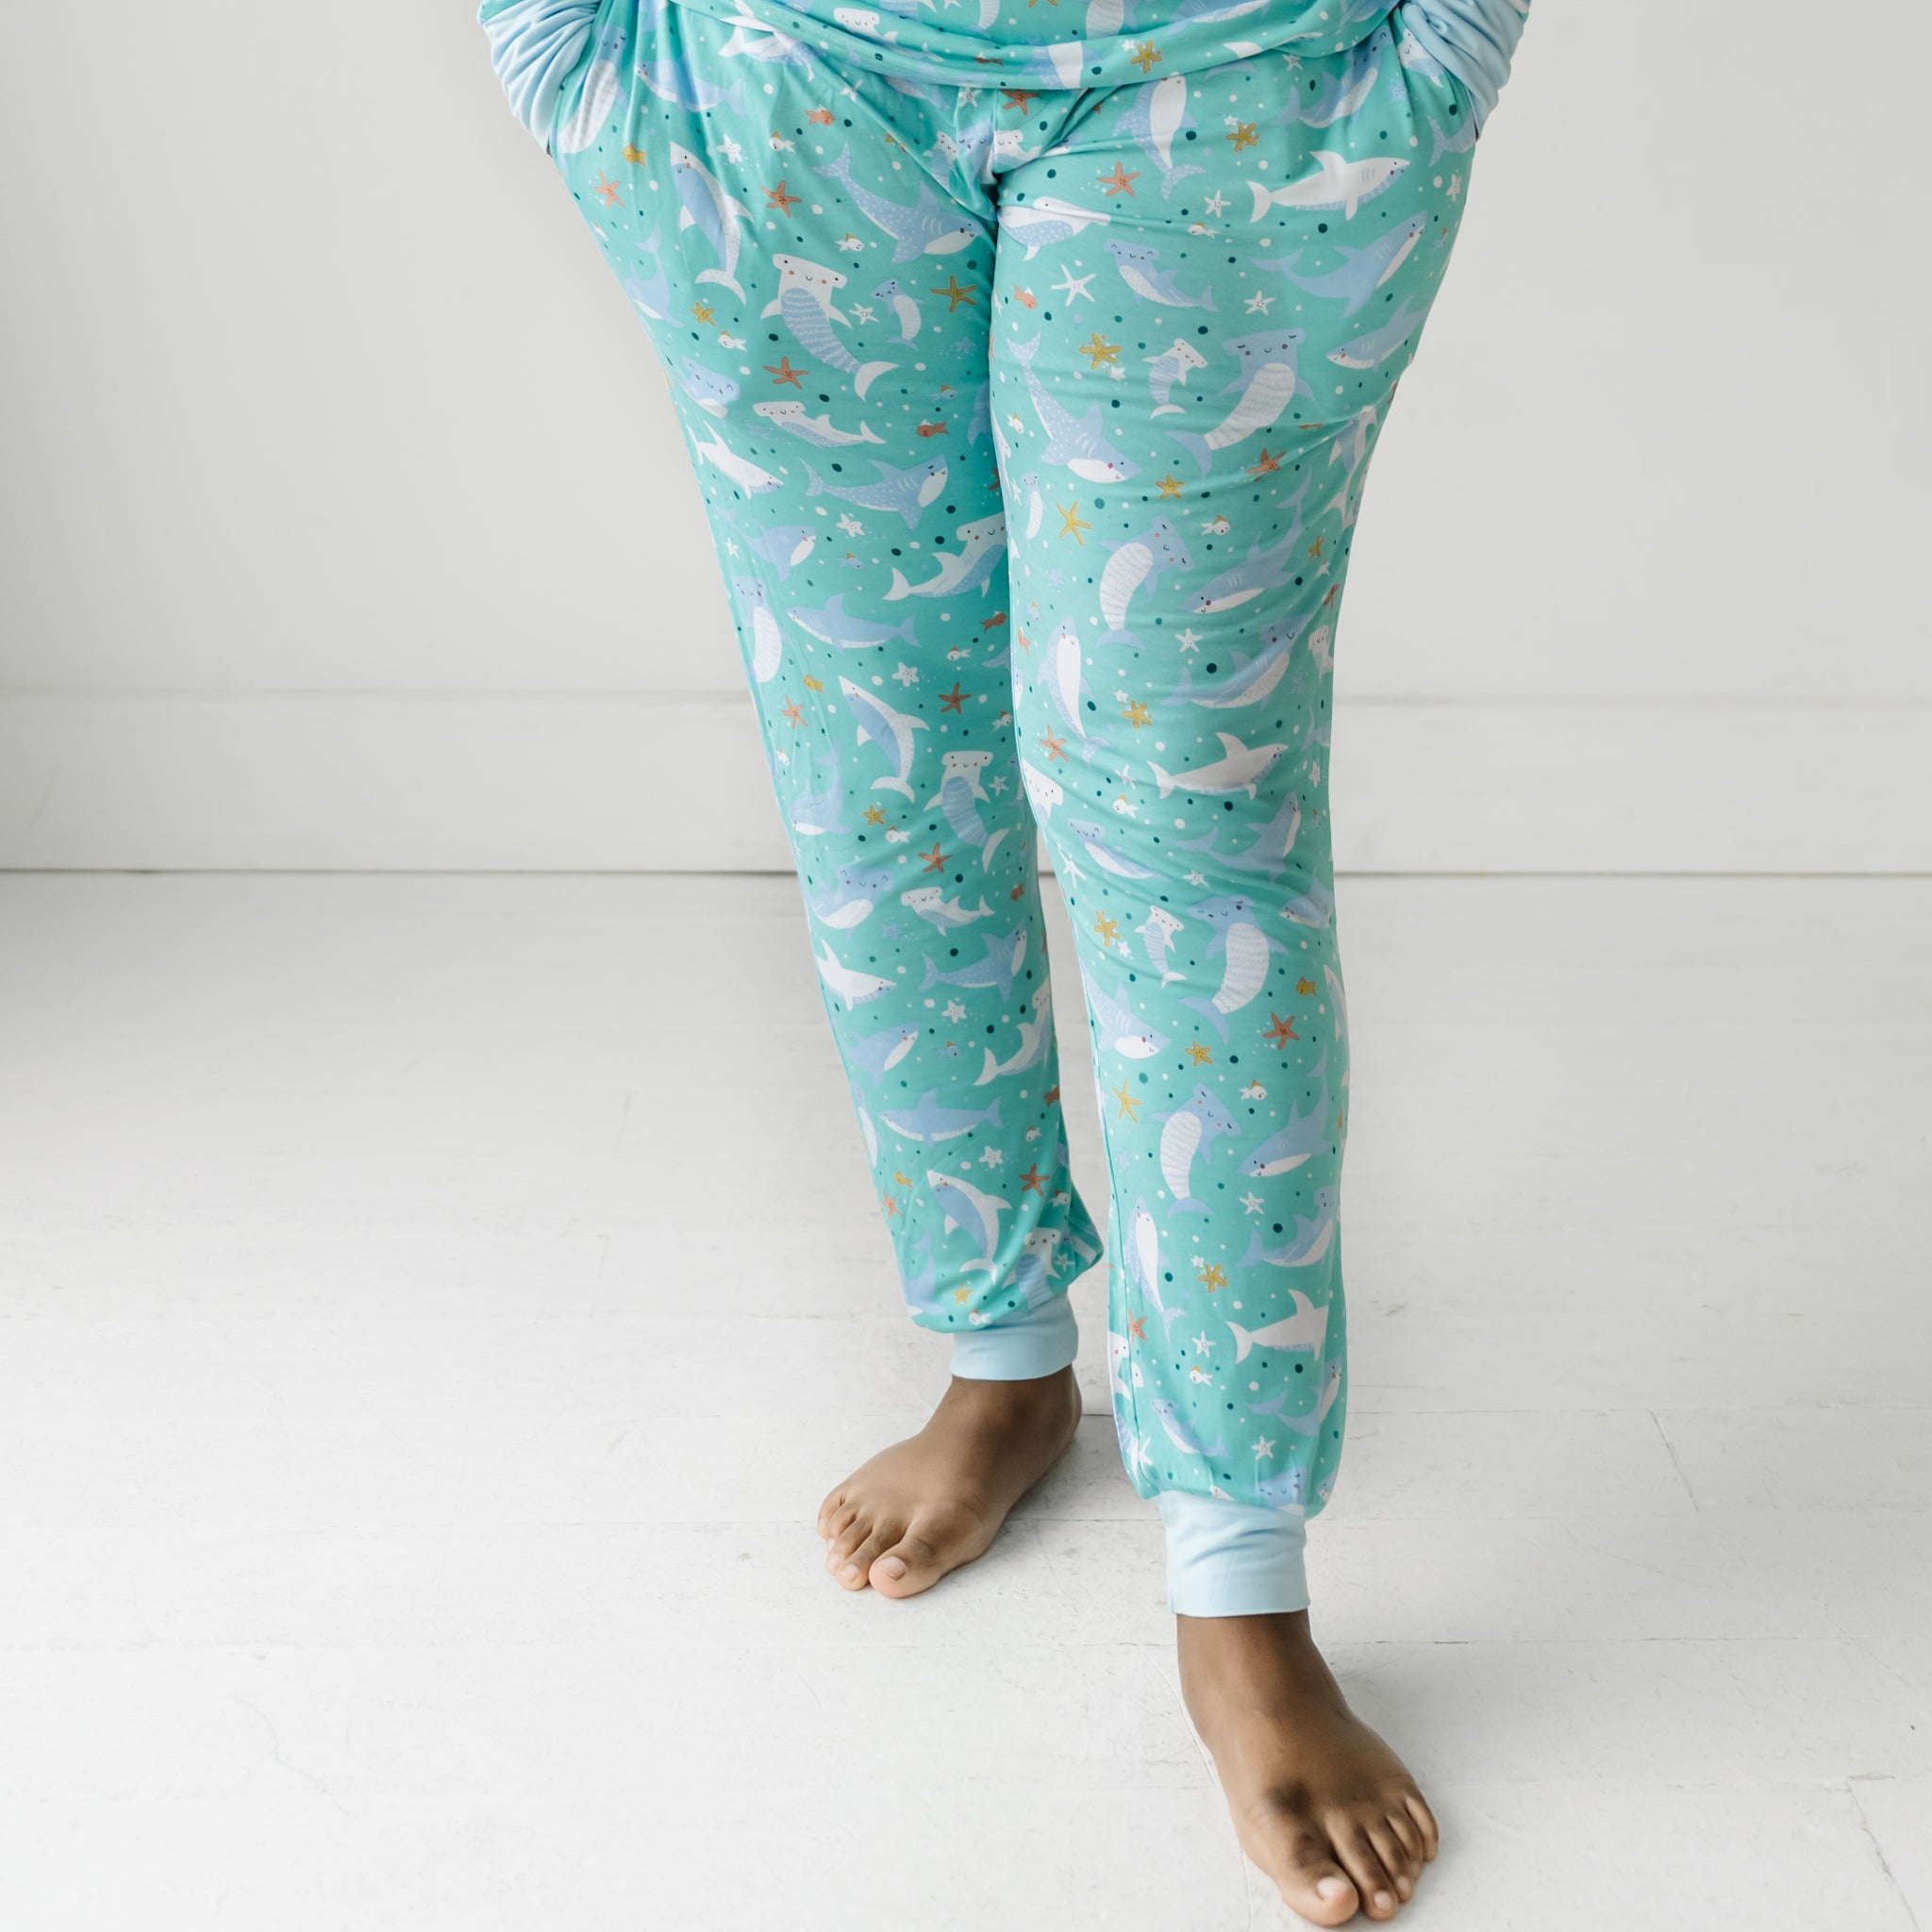  Women's Pajama Bottoms - XL / Women's Pajama Bottoms